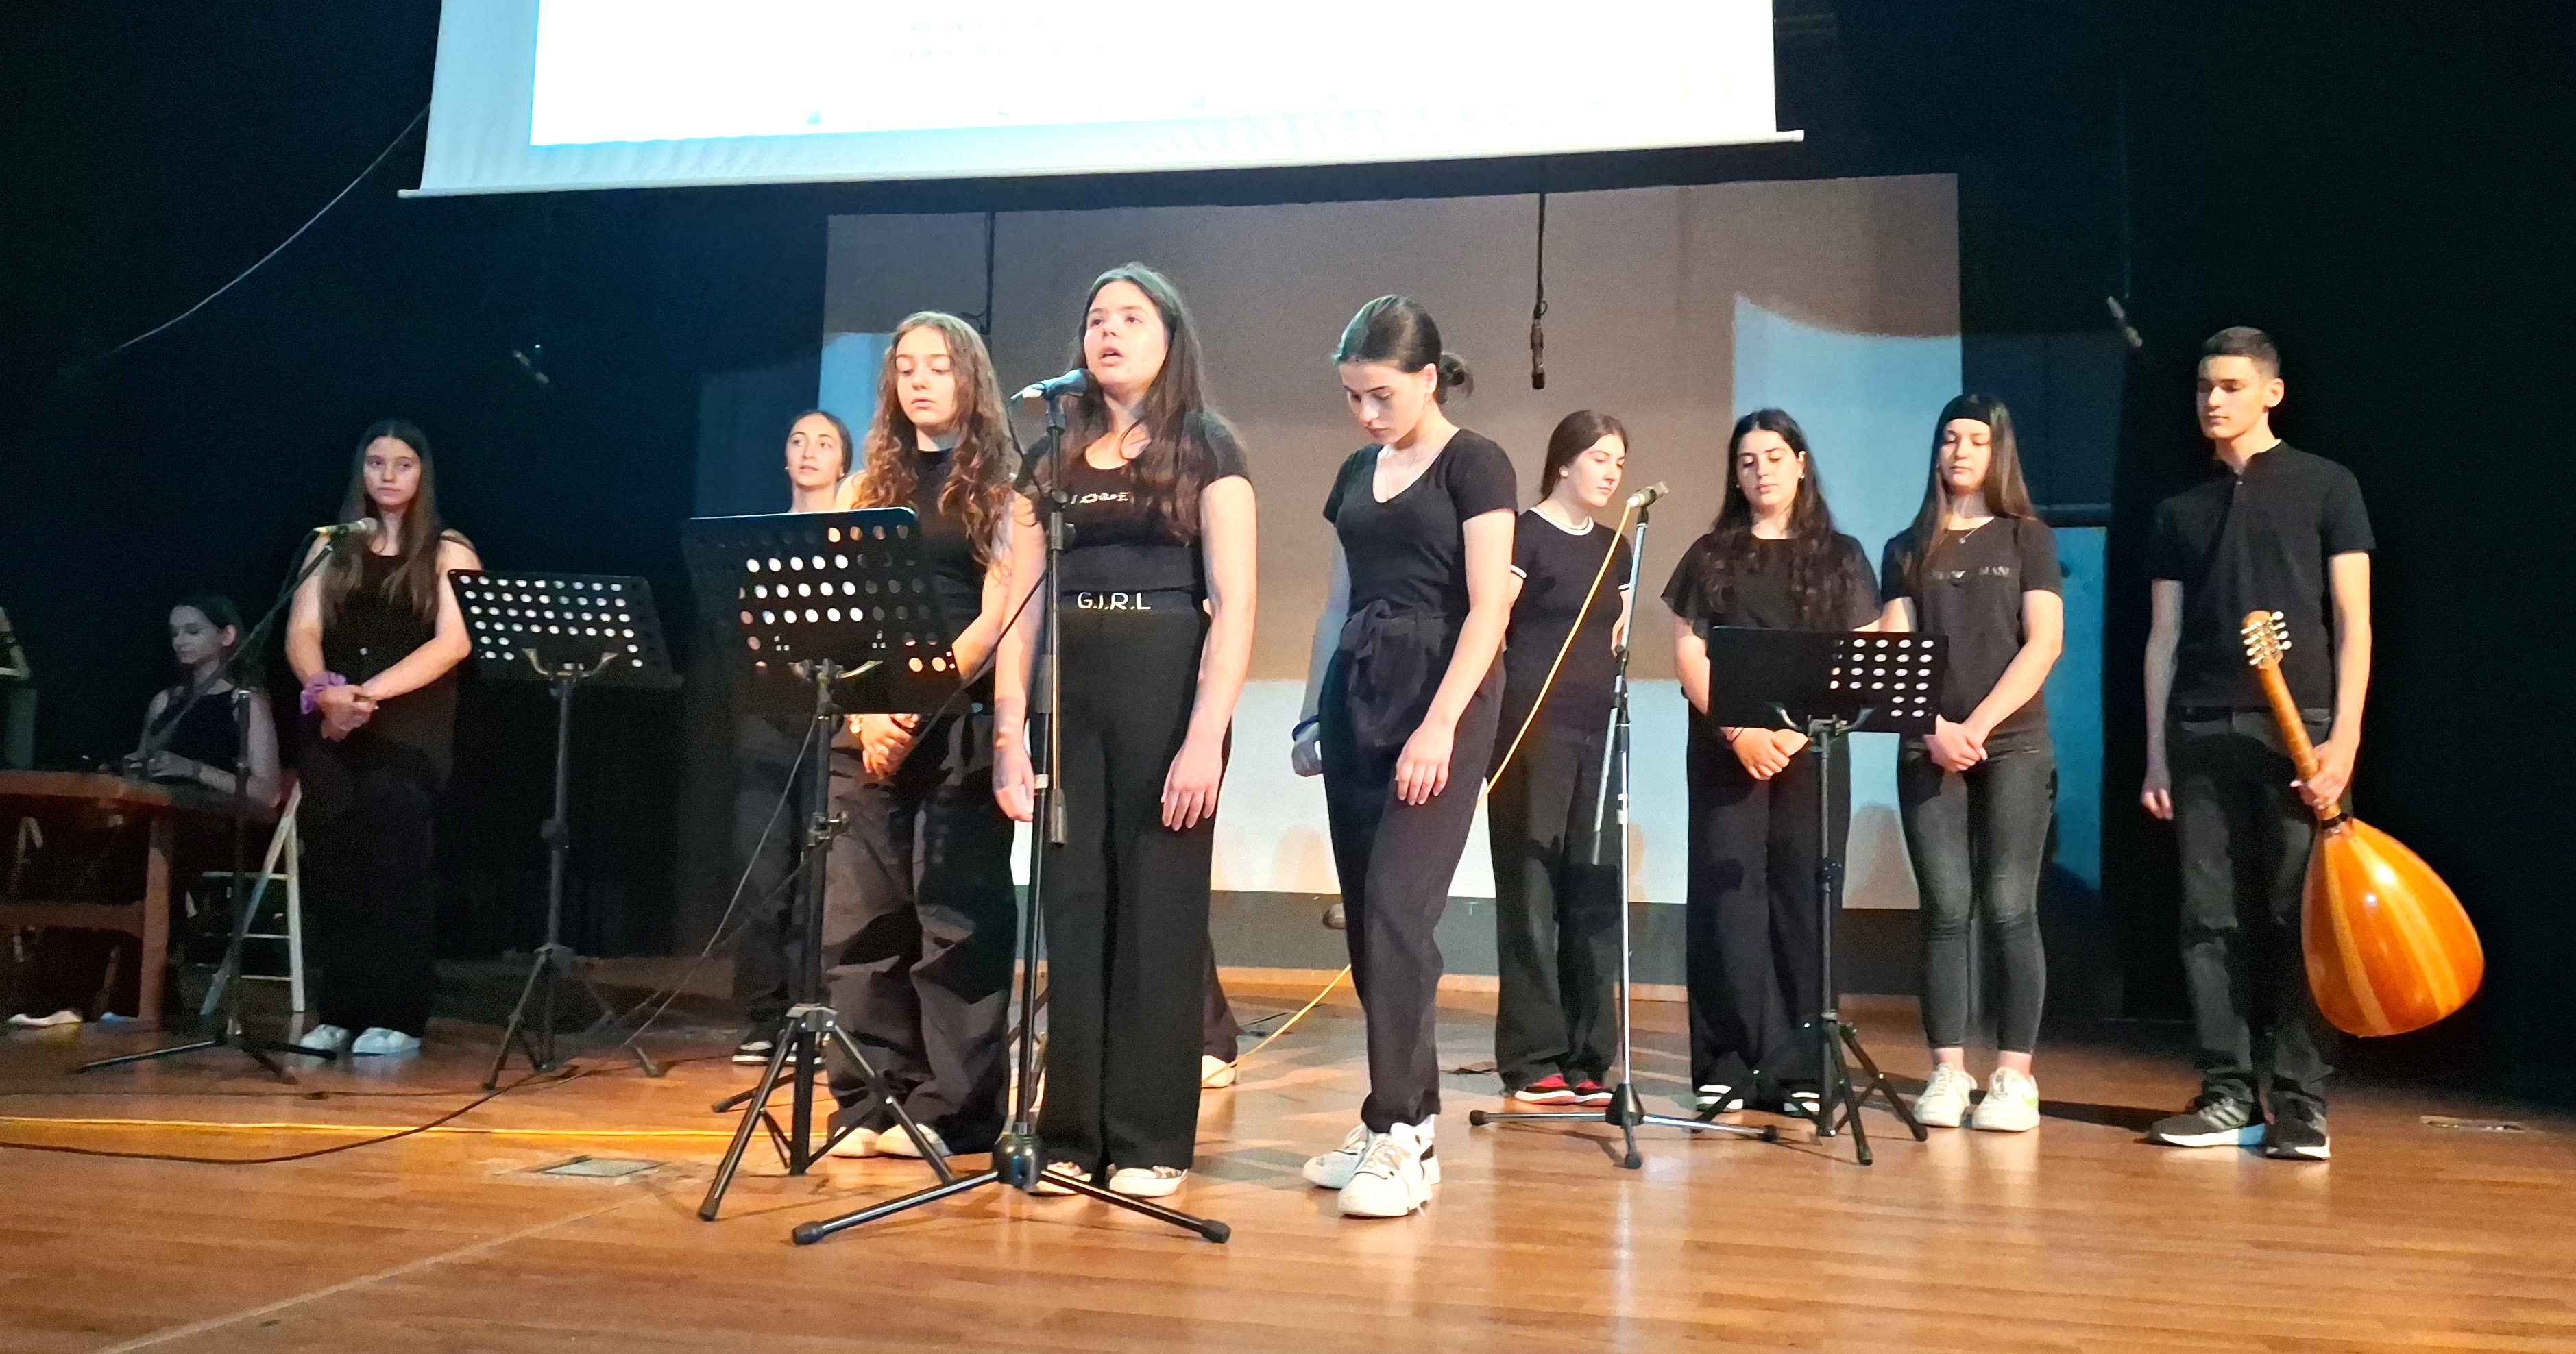 Παρουσιάστηκαν τρία εκπαιδευτικά πολιτιστικά προγράμματα στο Μουσικό Σχολείο Λάρισας 